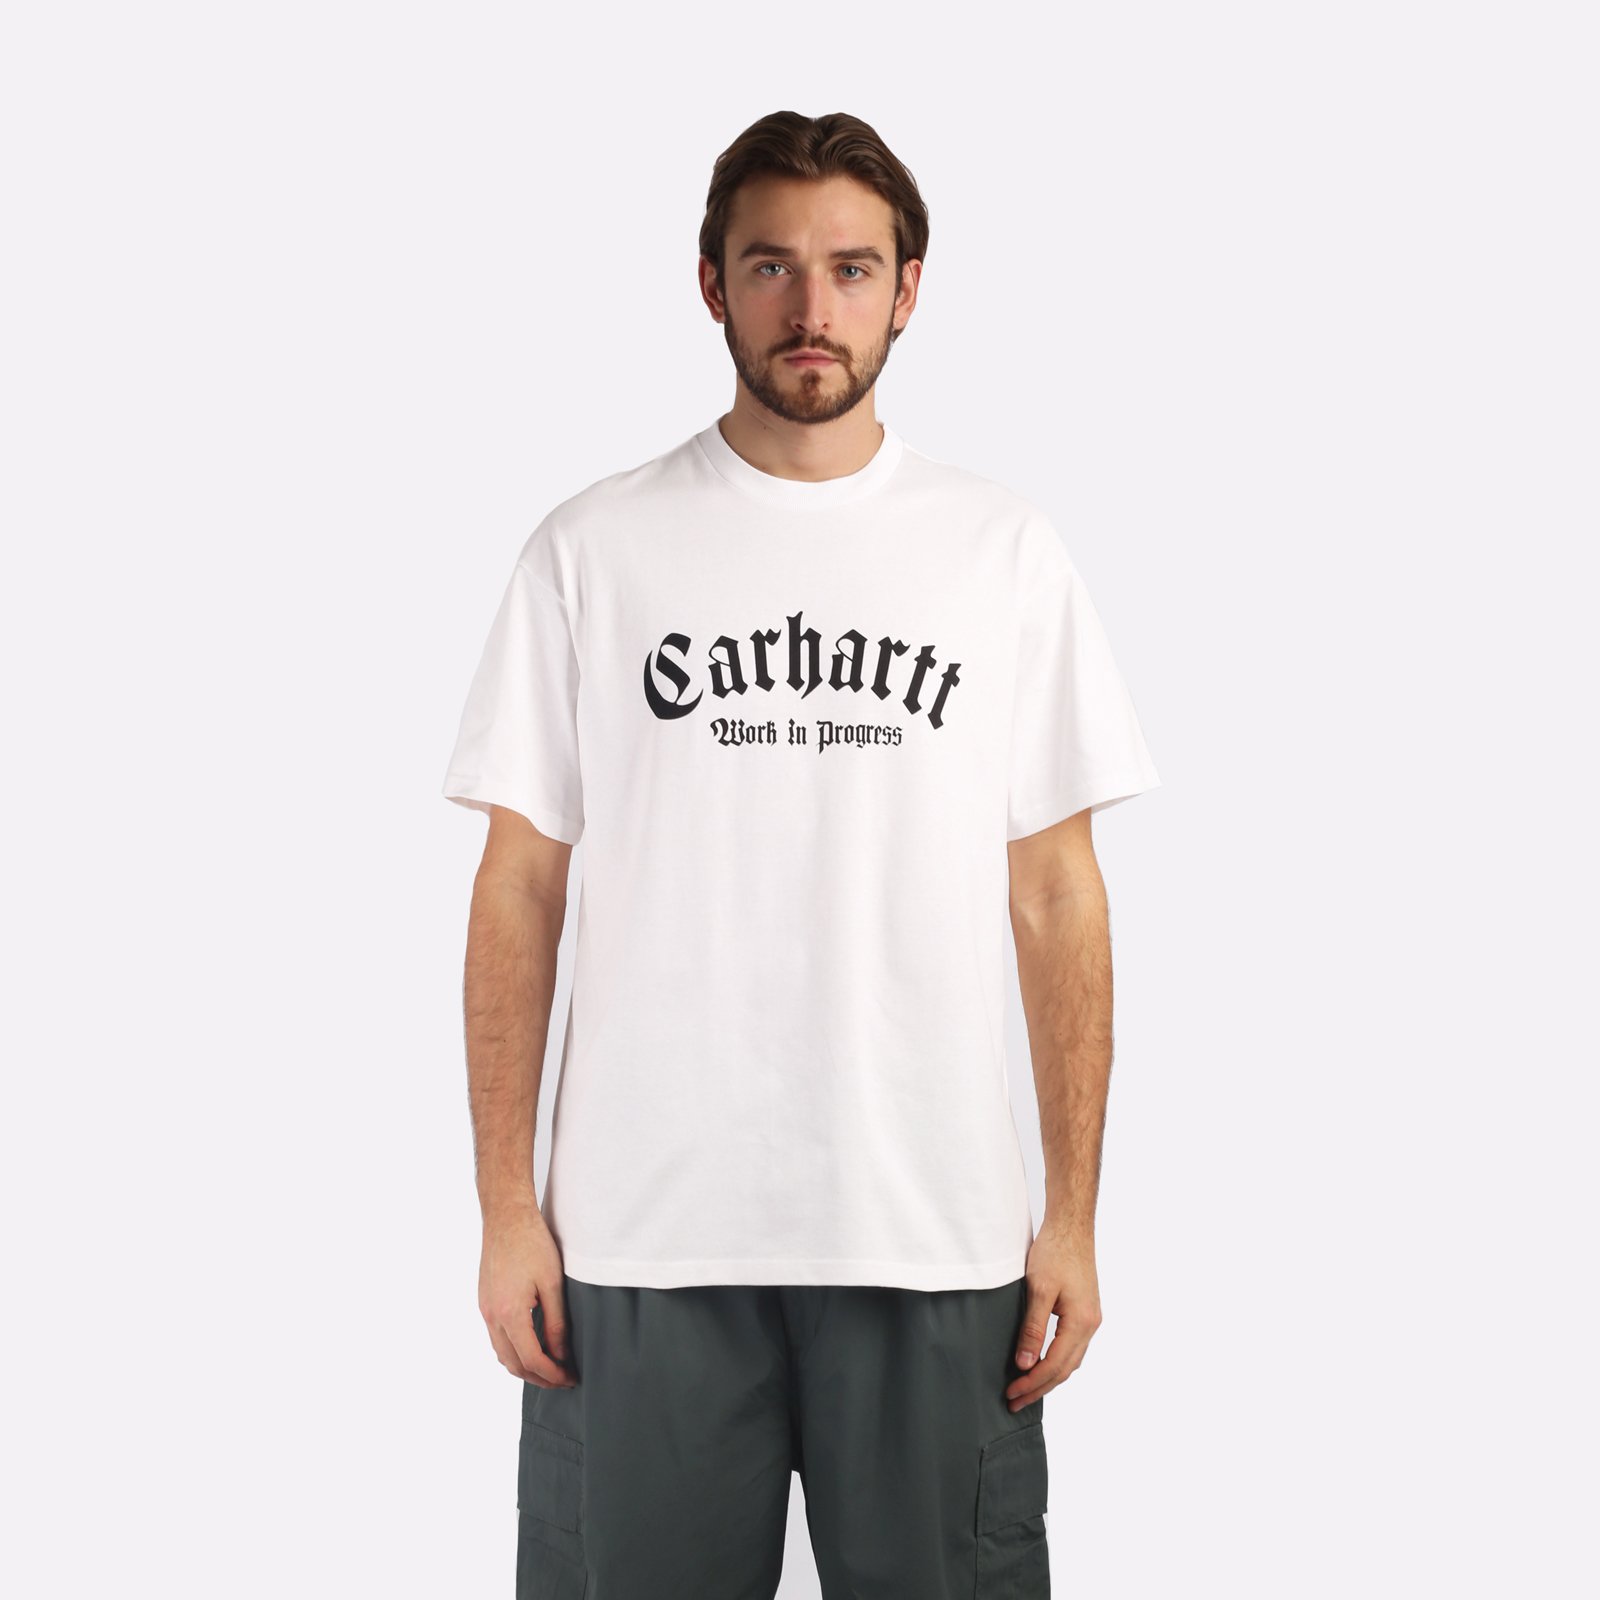 мужская футболка Carhartt WIP S/S Onyx T-Shirt  (I032875-white/black)  - цена, описание, фото 1